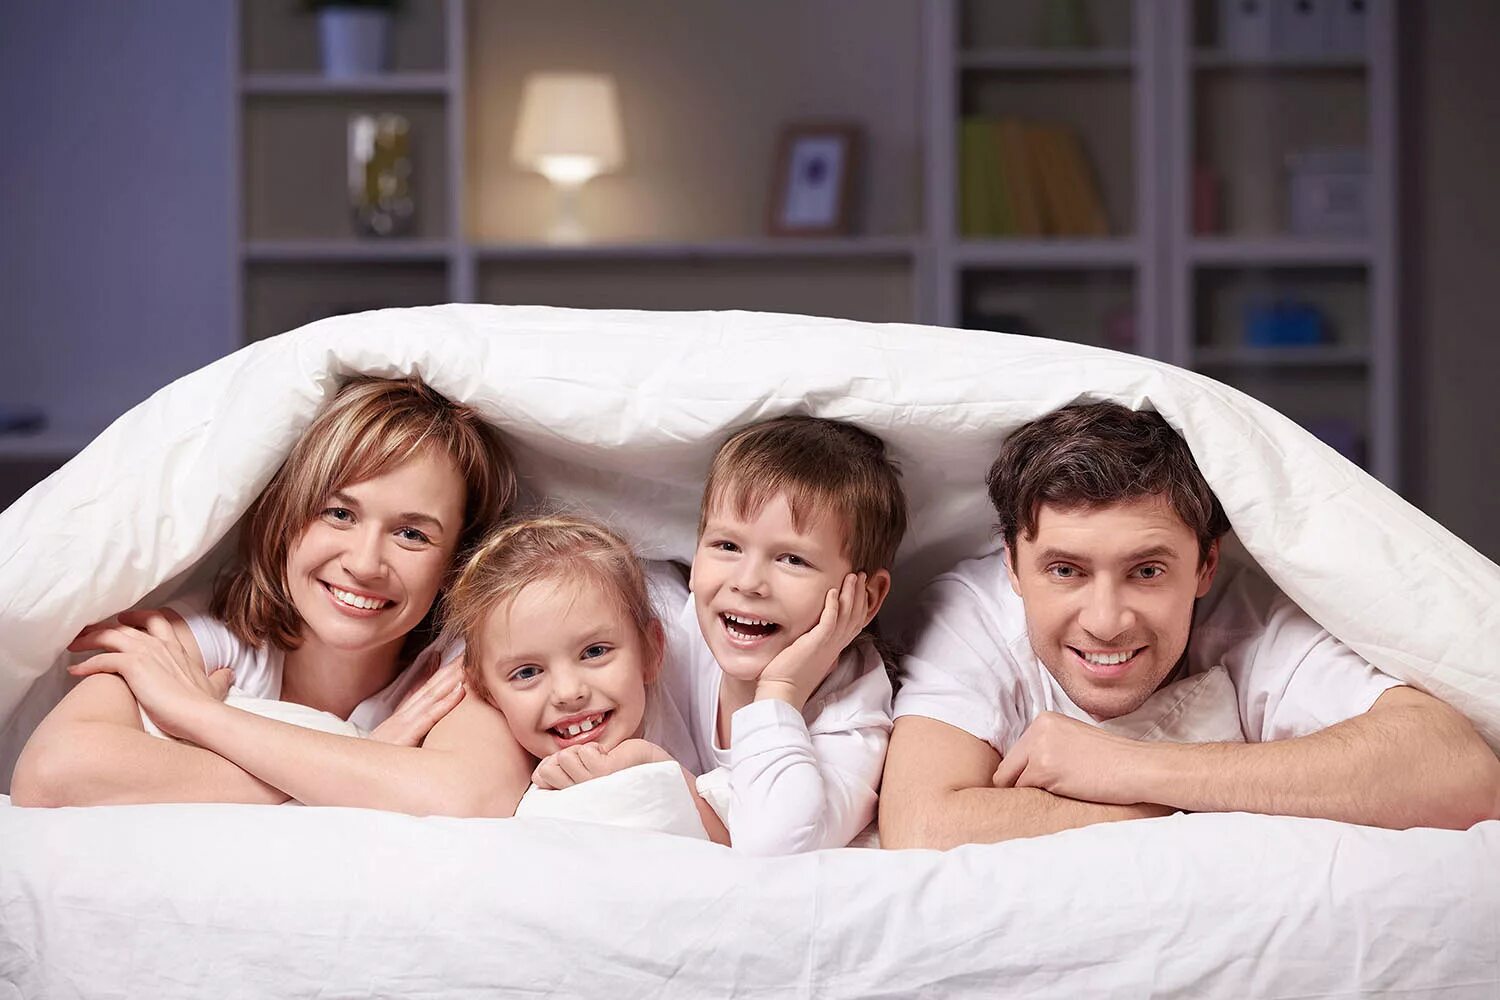 Распорядиться семейный. Семейная фотосессия. Семьи с детьми в гостинице. Семья на кровати. Счастливая семья в постели.